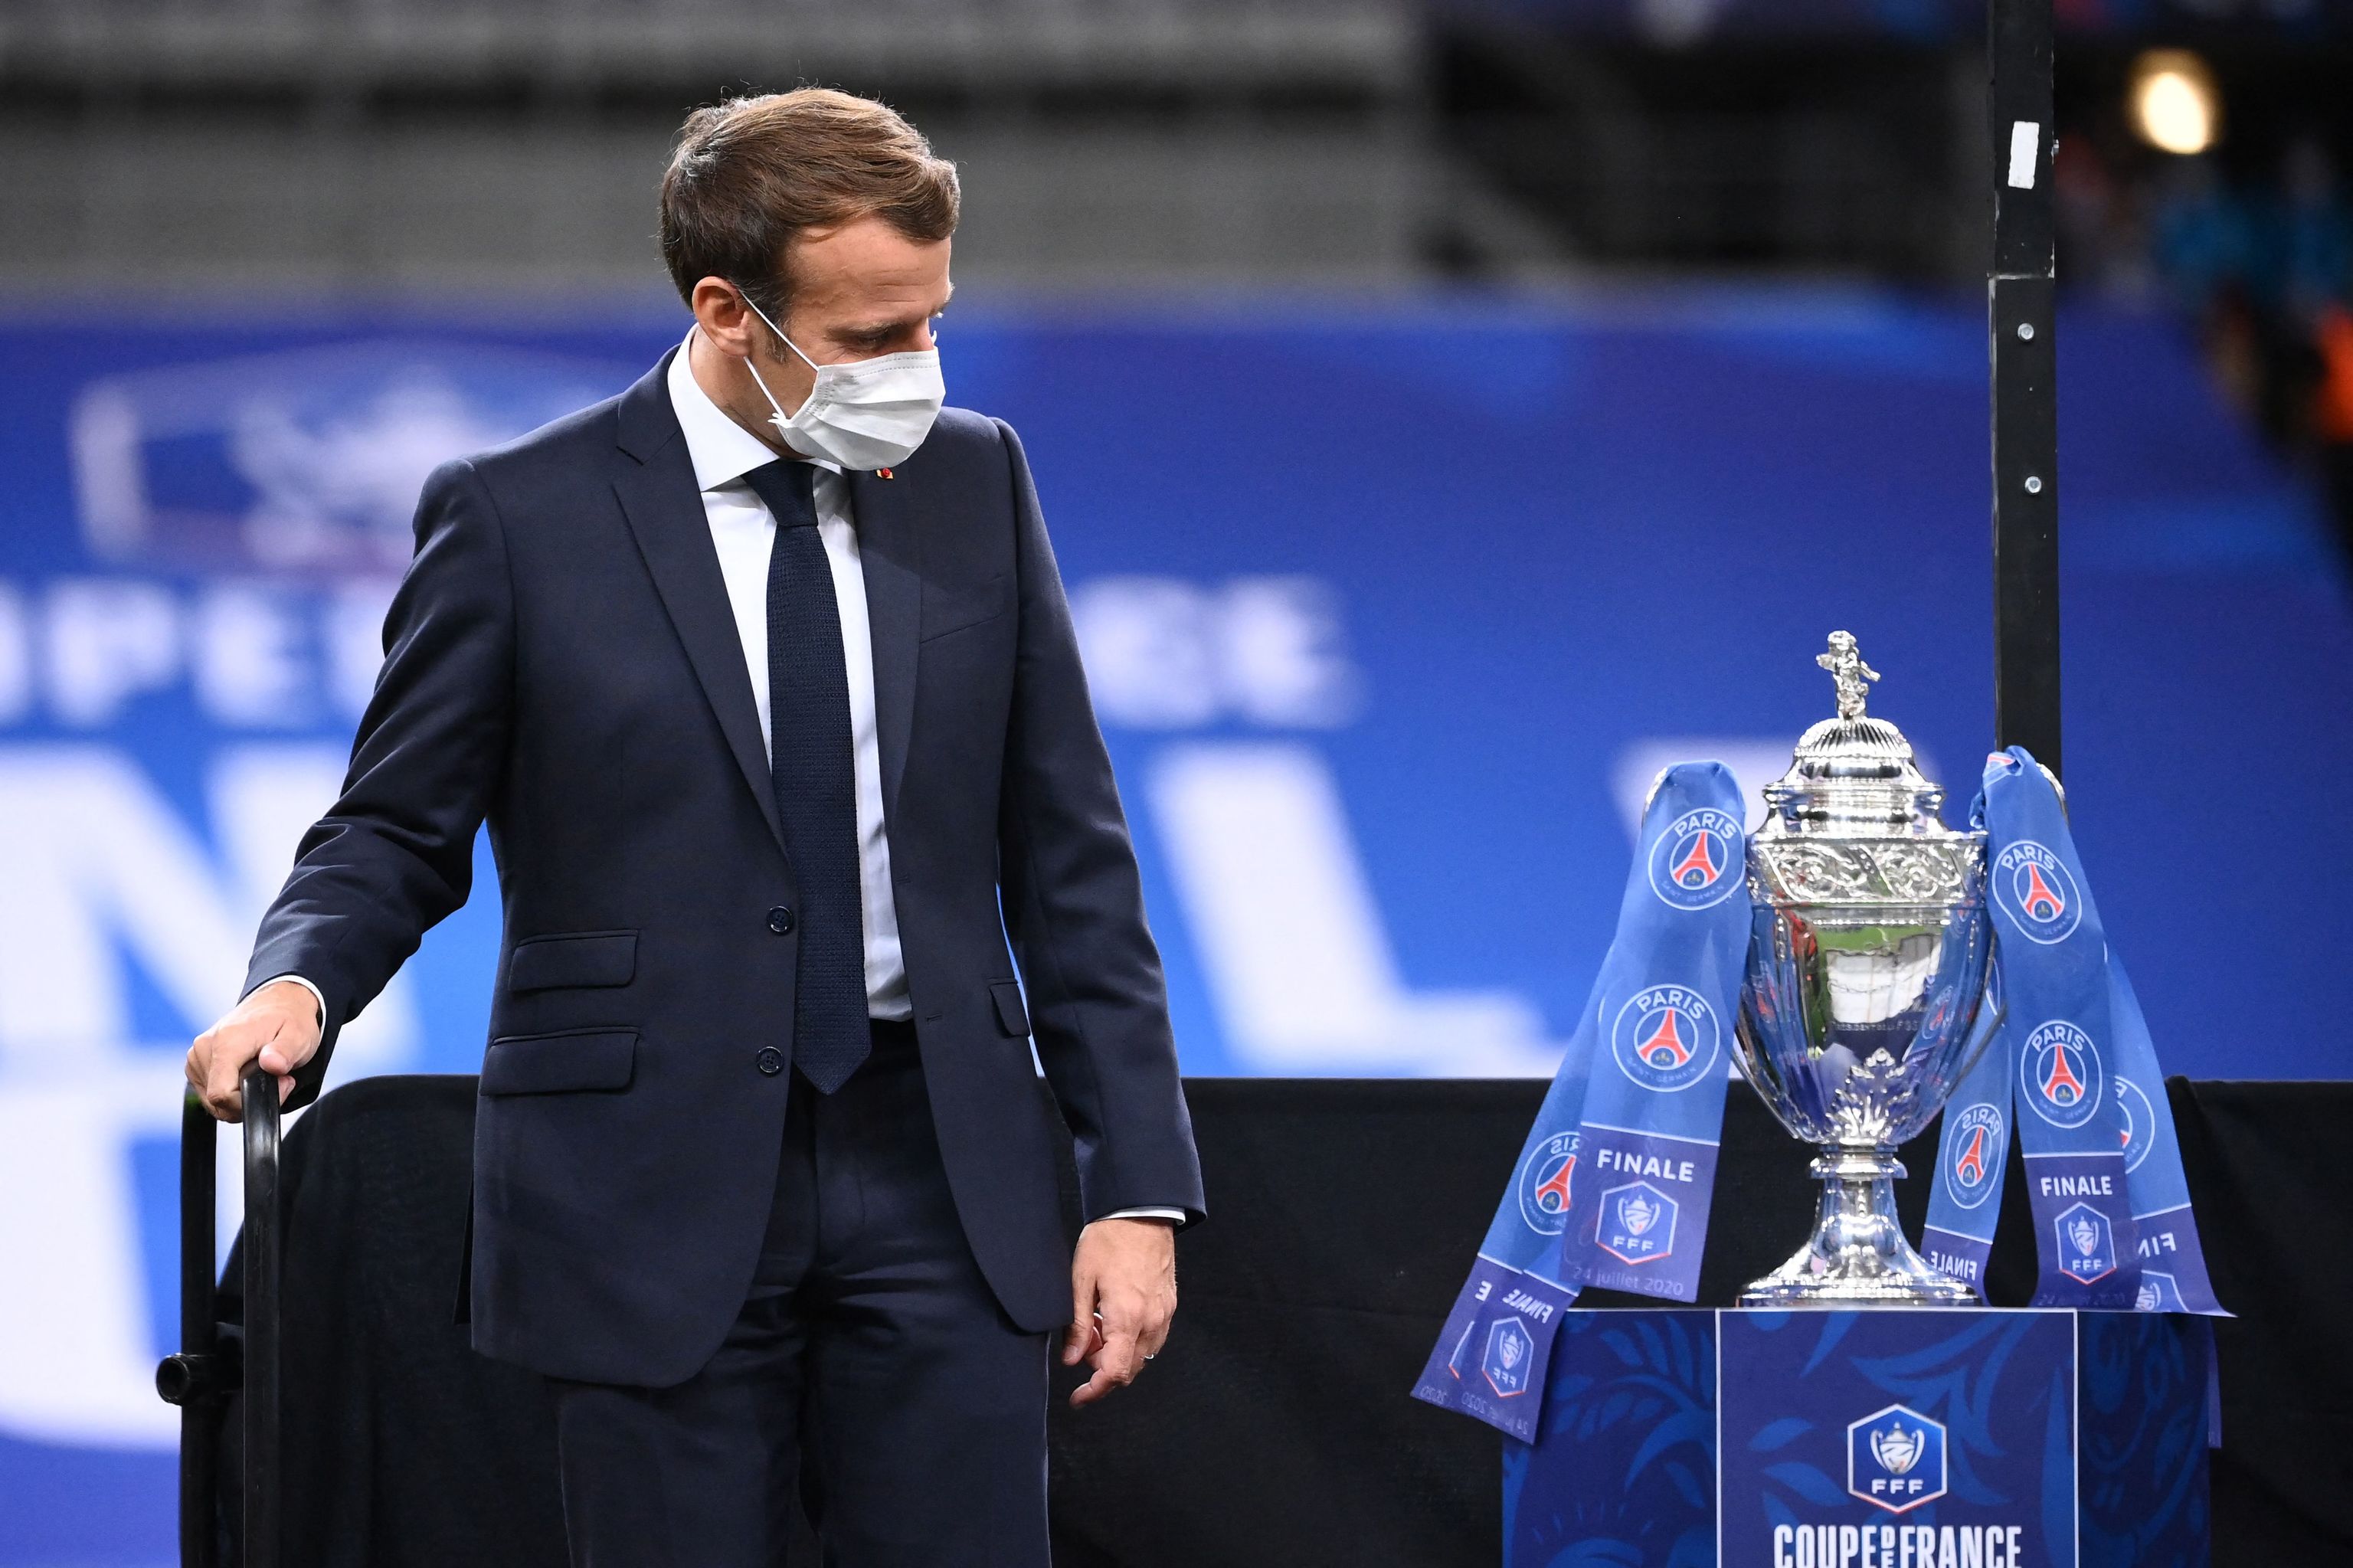 Macron eleva la tensión en la final de la Copa de Francia: más policías que en la final de la Champions